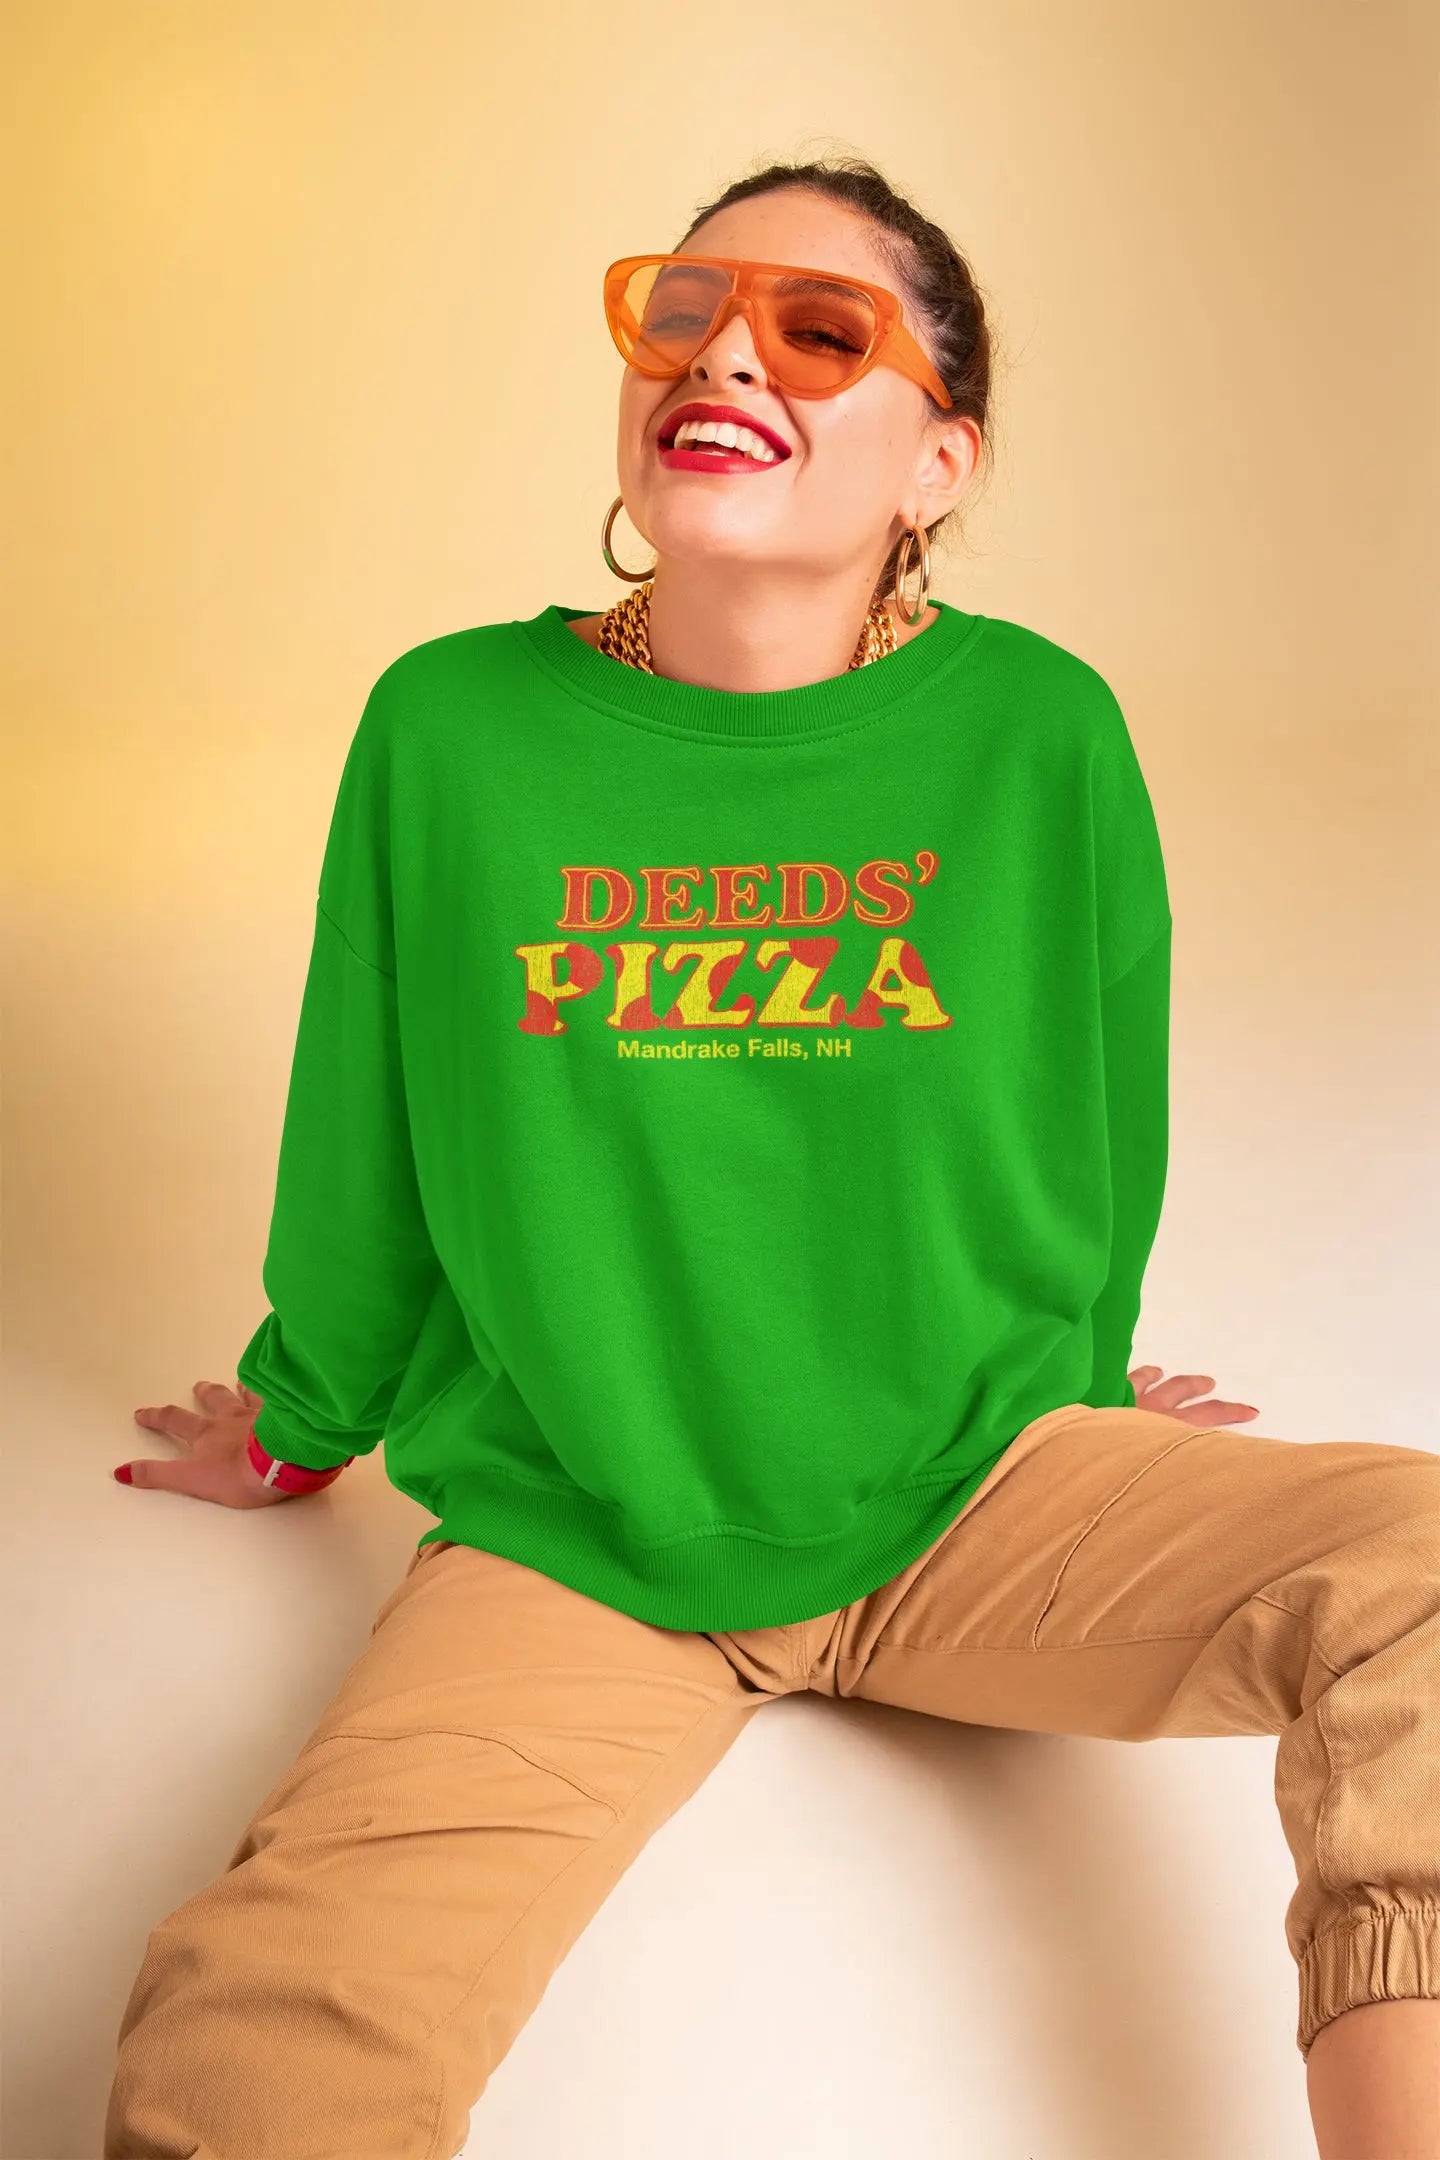 Deed's Pizza Shop Tshirt - Donkey Tees